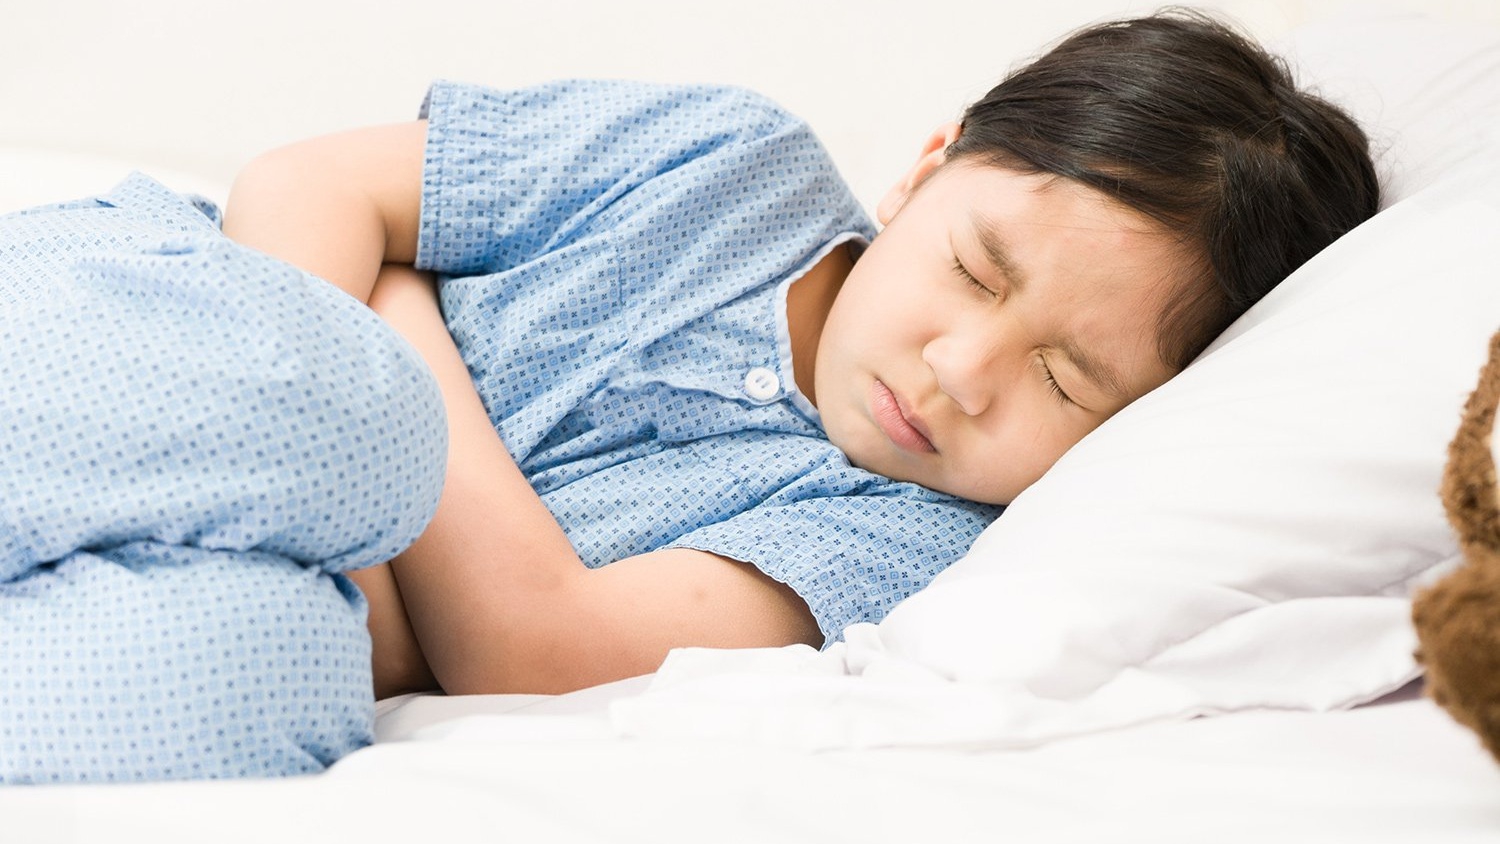 Khi nào cần đưa trẻ 10 tuổi bị đau bụng quanh rốn đến bác sĩ? (Suggestion: khi triệu chứng kéo dài, trẻ bị mệt mỏi, cảm giác đau tăng lên, xuất hiện các triệu chứng khác,...)
